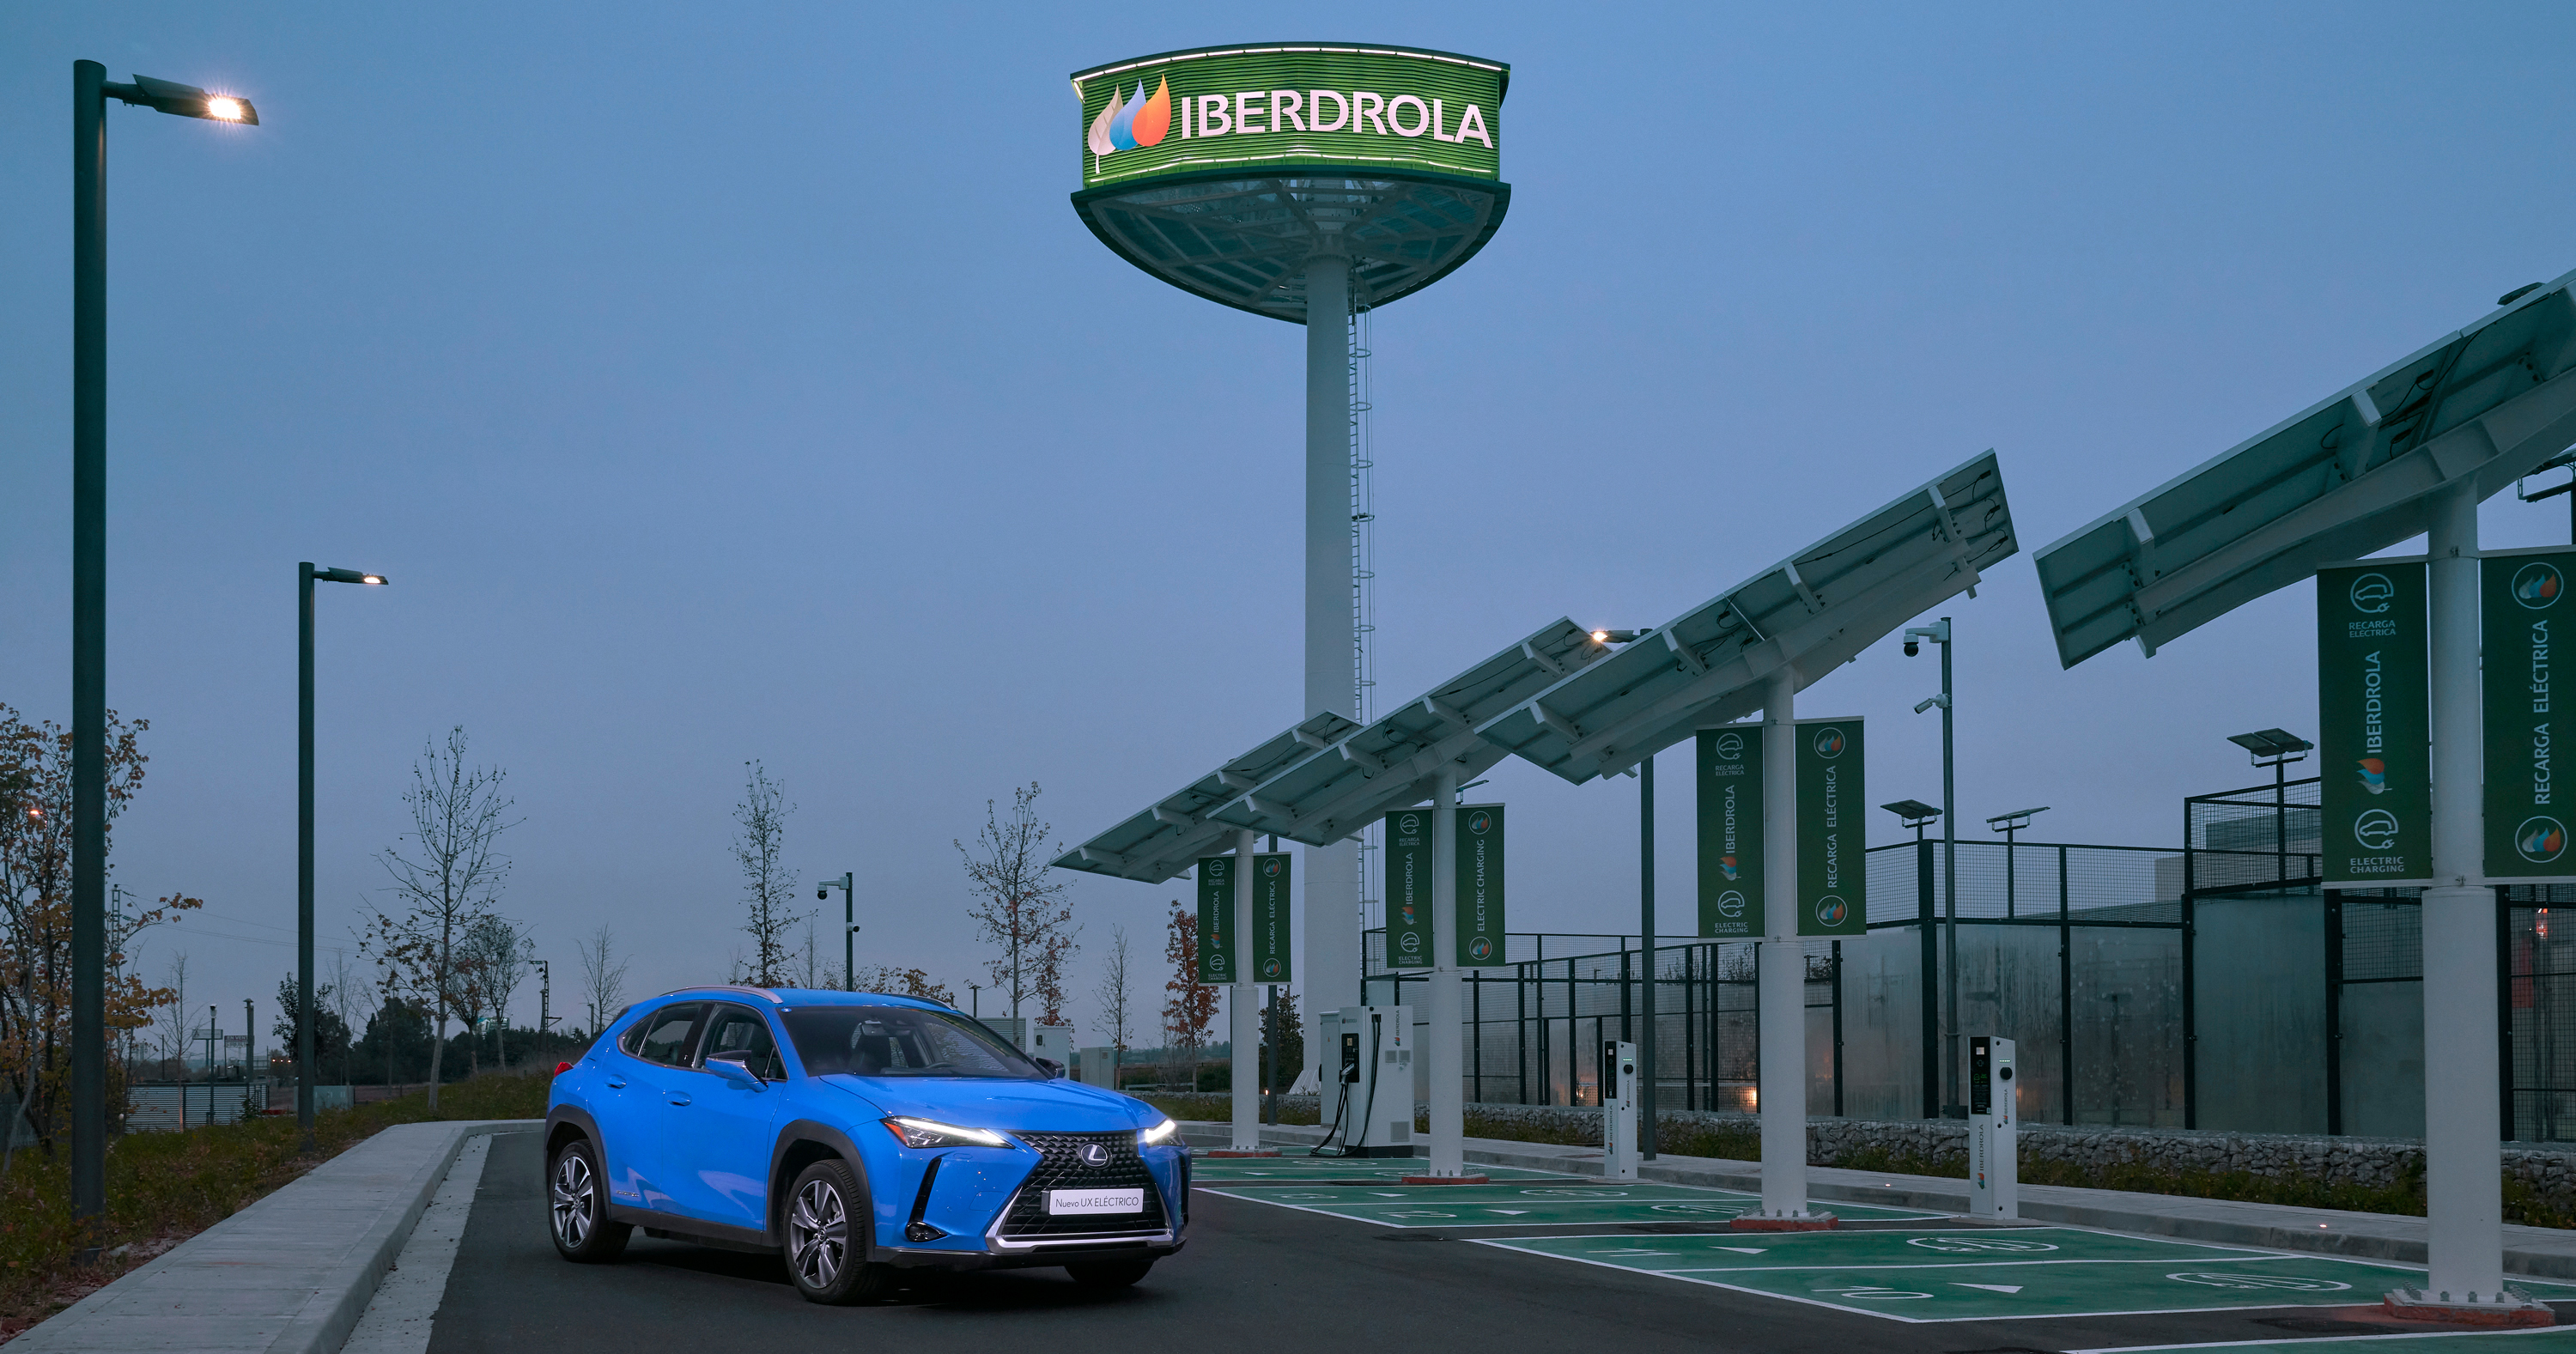 Galería: Lexus e Iberdrola se unen para ofrecer la red más completa de cargadores eléctricos a sus clientes